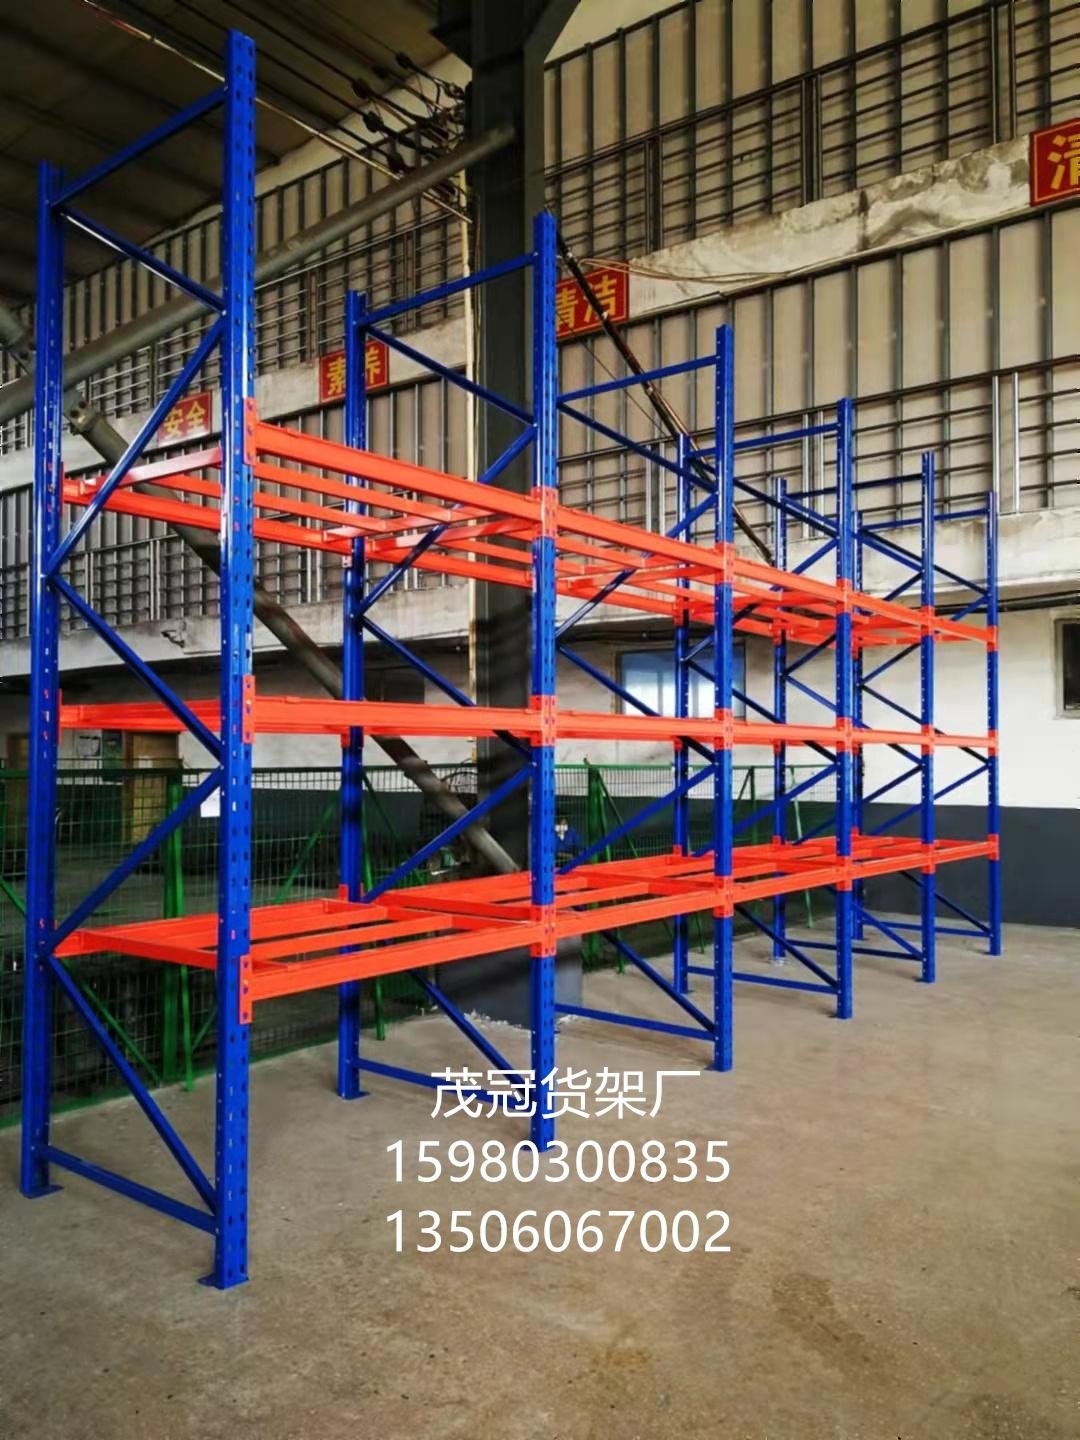 Heavy shelves, Quanzhou Warehouse Shelves 2